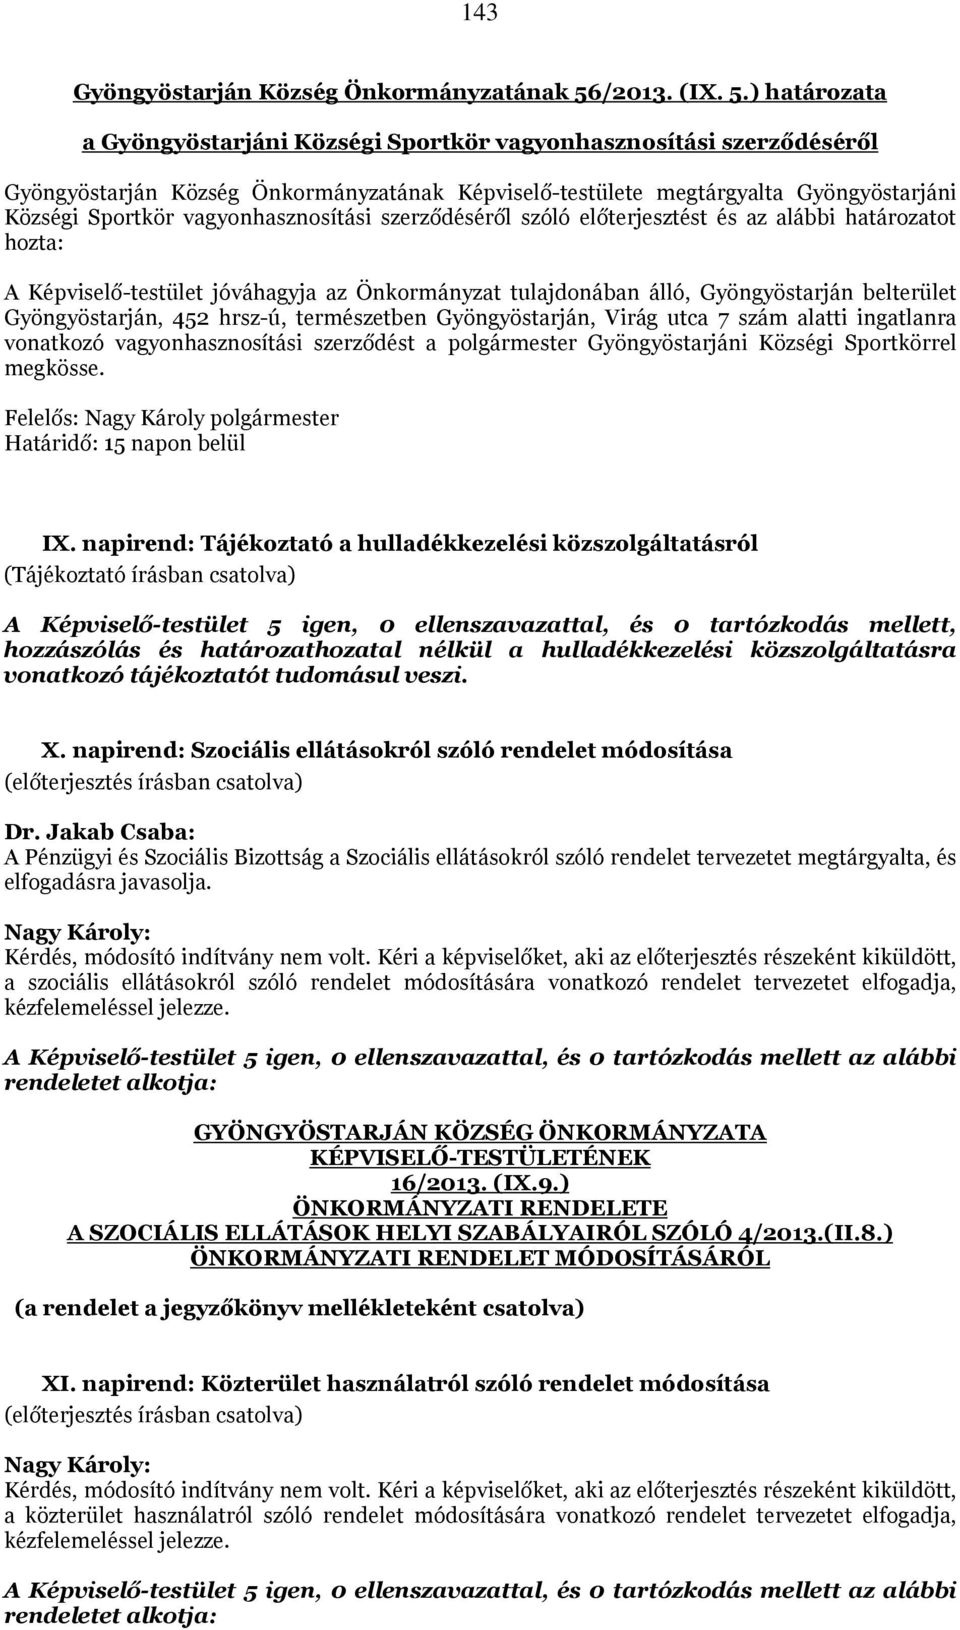 ) határozata a Gyöngyöstarjáni Községi Sportkör vagyonhasznosítási szerződéséről Gyöngyöstarján Község Önkormányzatának Képviselő-testülete megtárgyalta Gyöngyöstarjáni Községi Sportkör